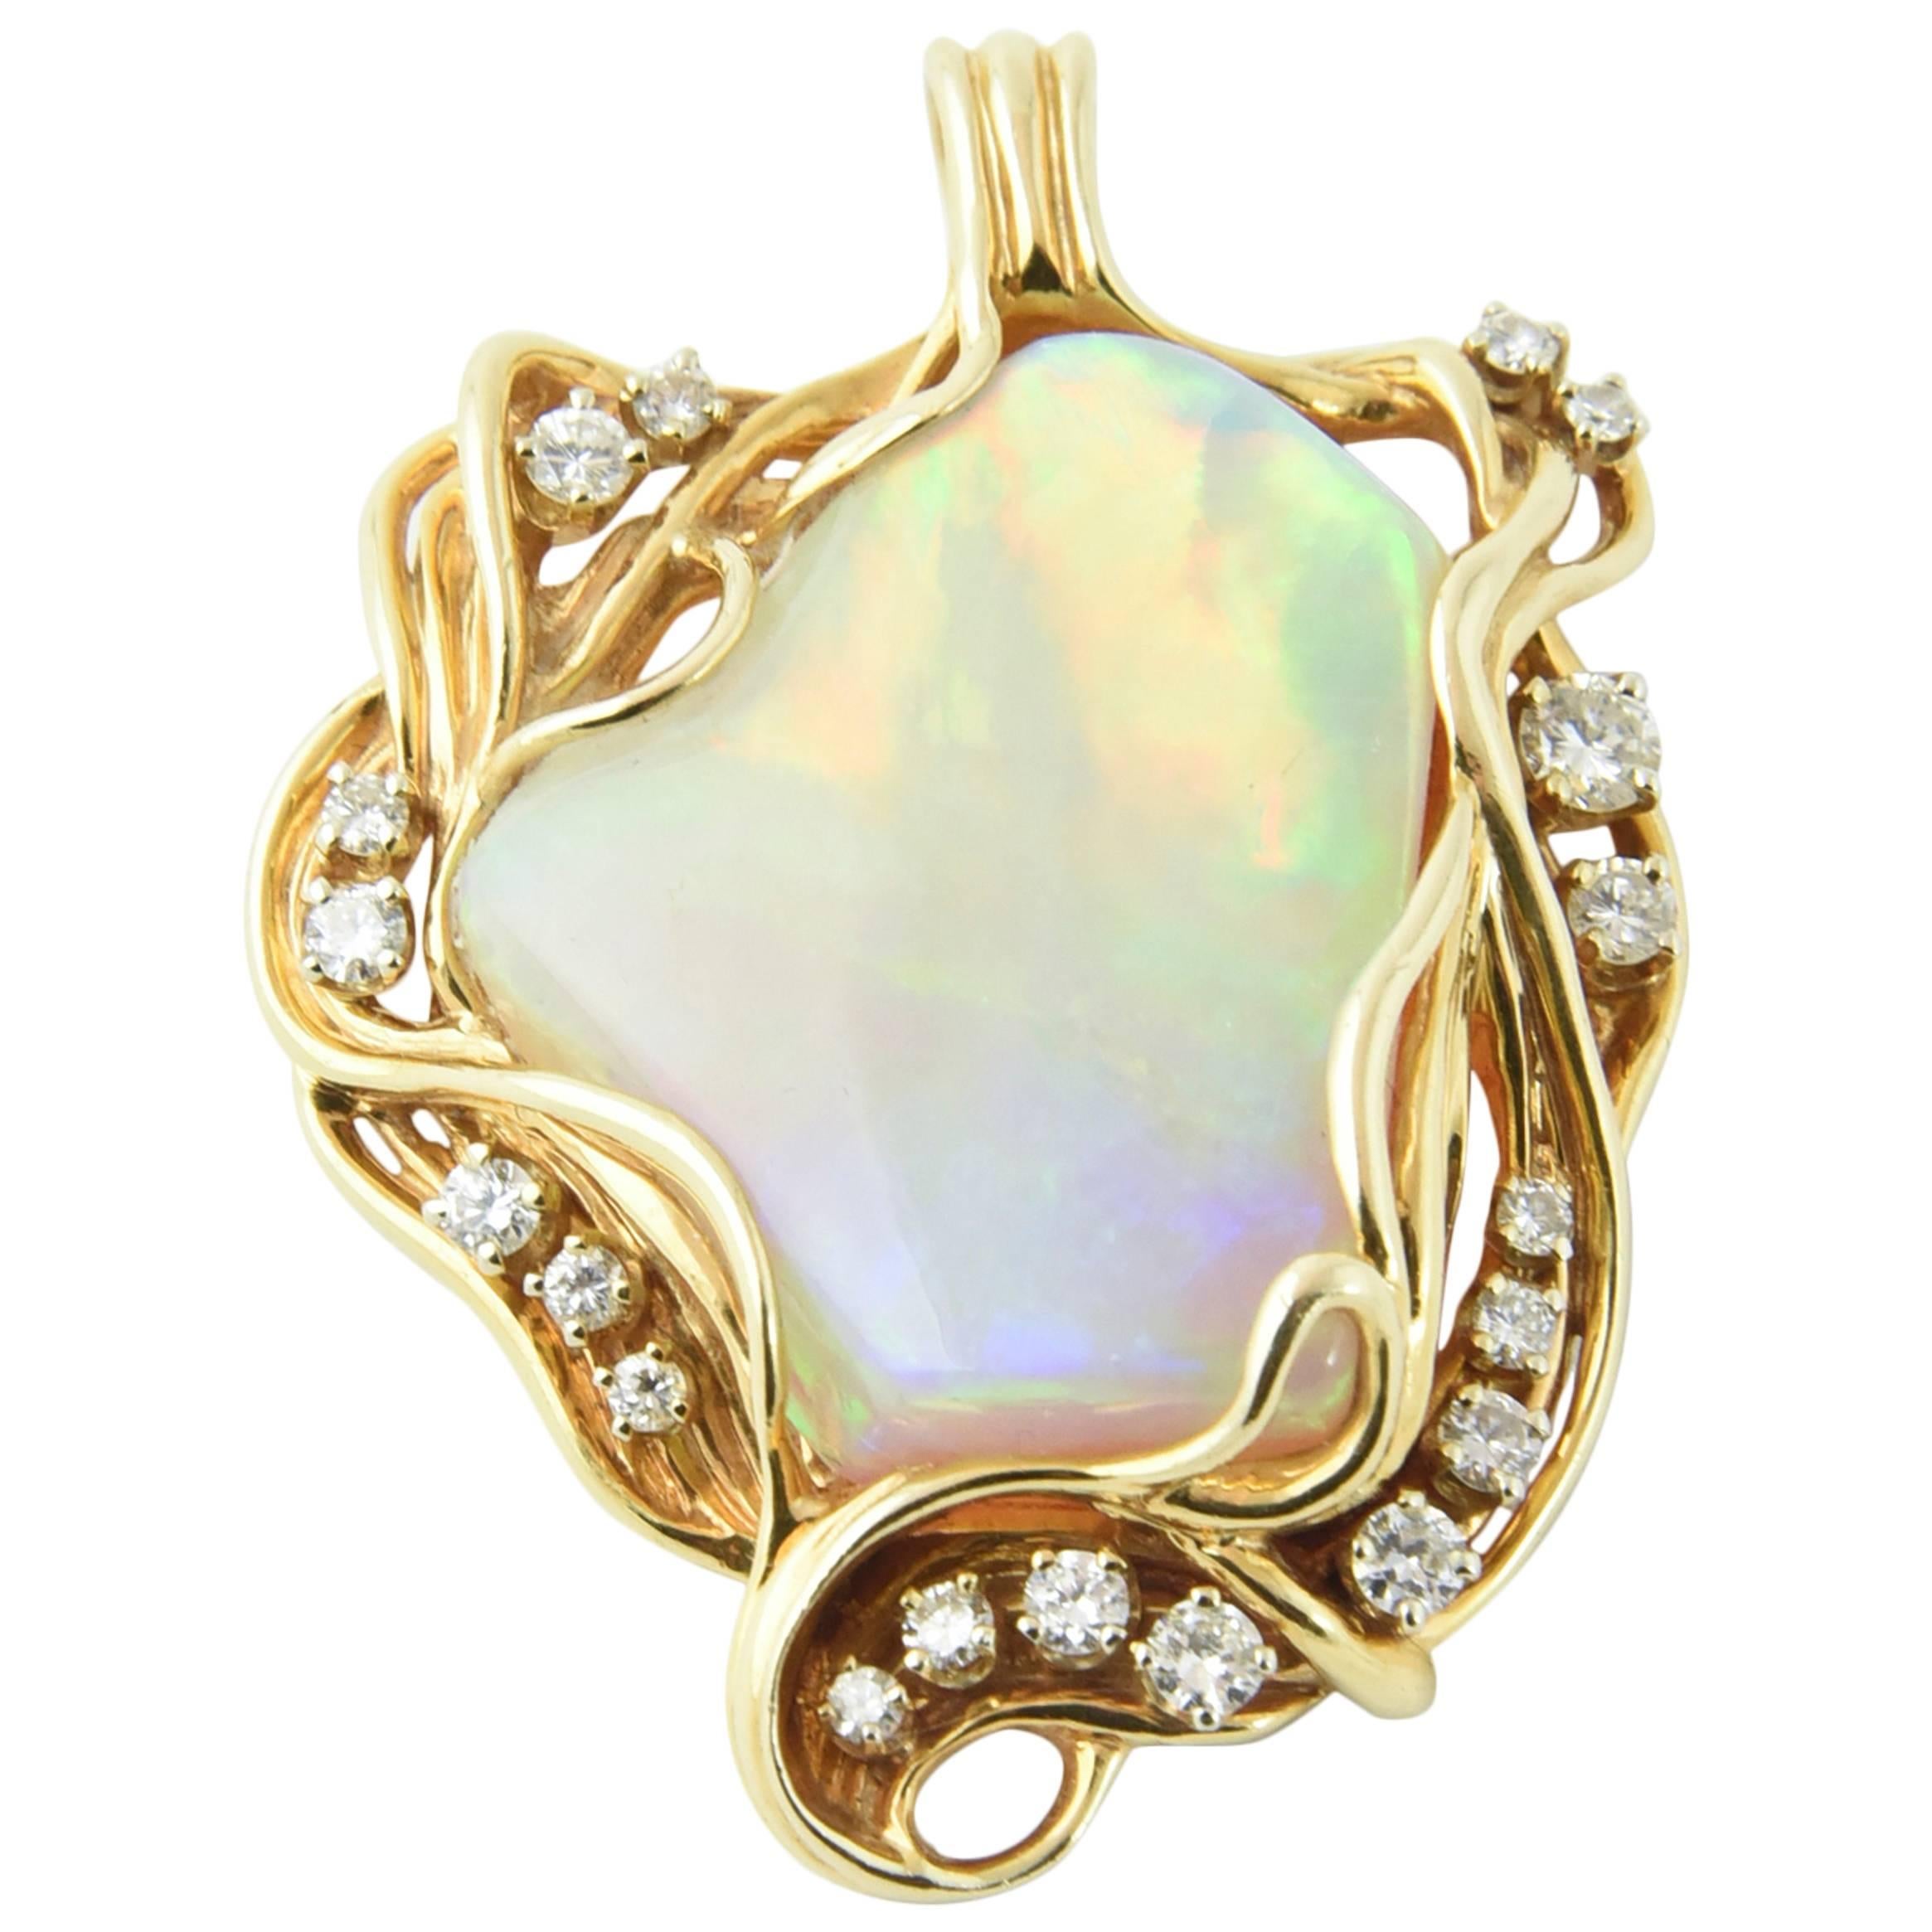 Collier pendentif en or de forme libre avec broche d'opales grises australiennes et diamants, années 1960